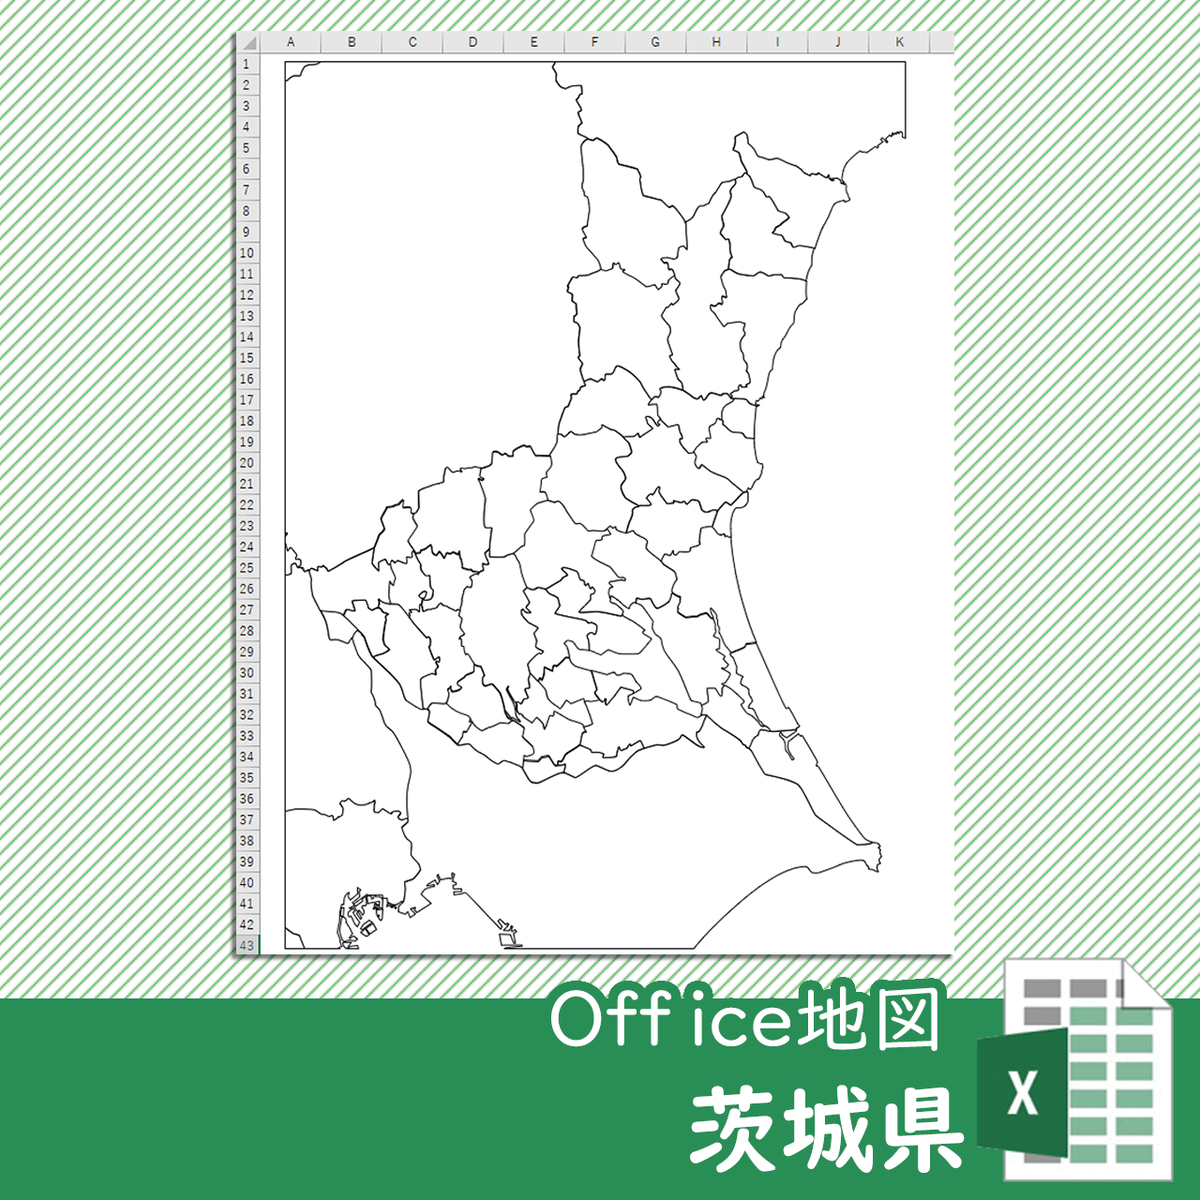 茨城県のoffice地図 自動色塗り機能付き 白地図専門店